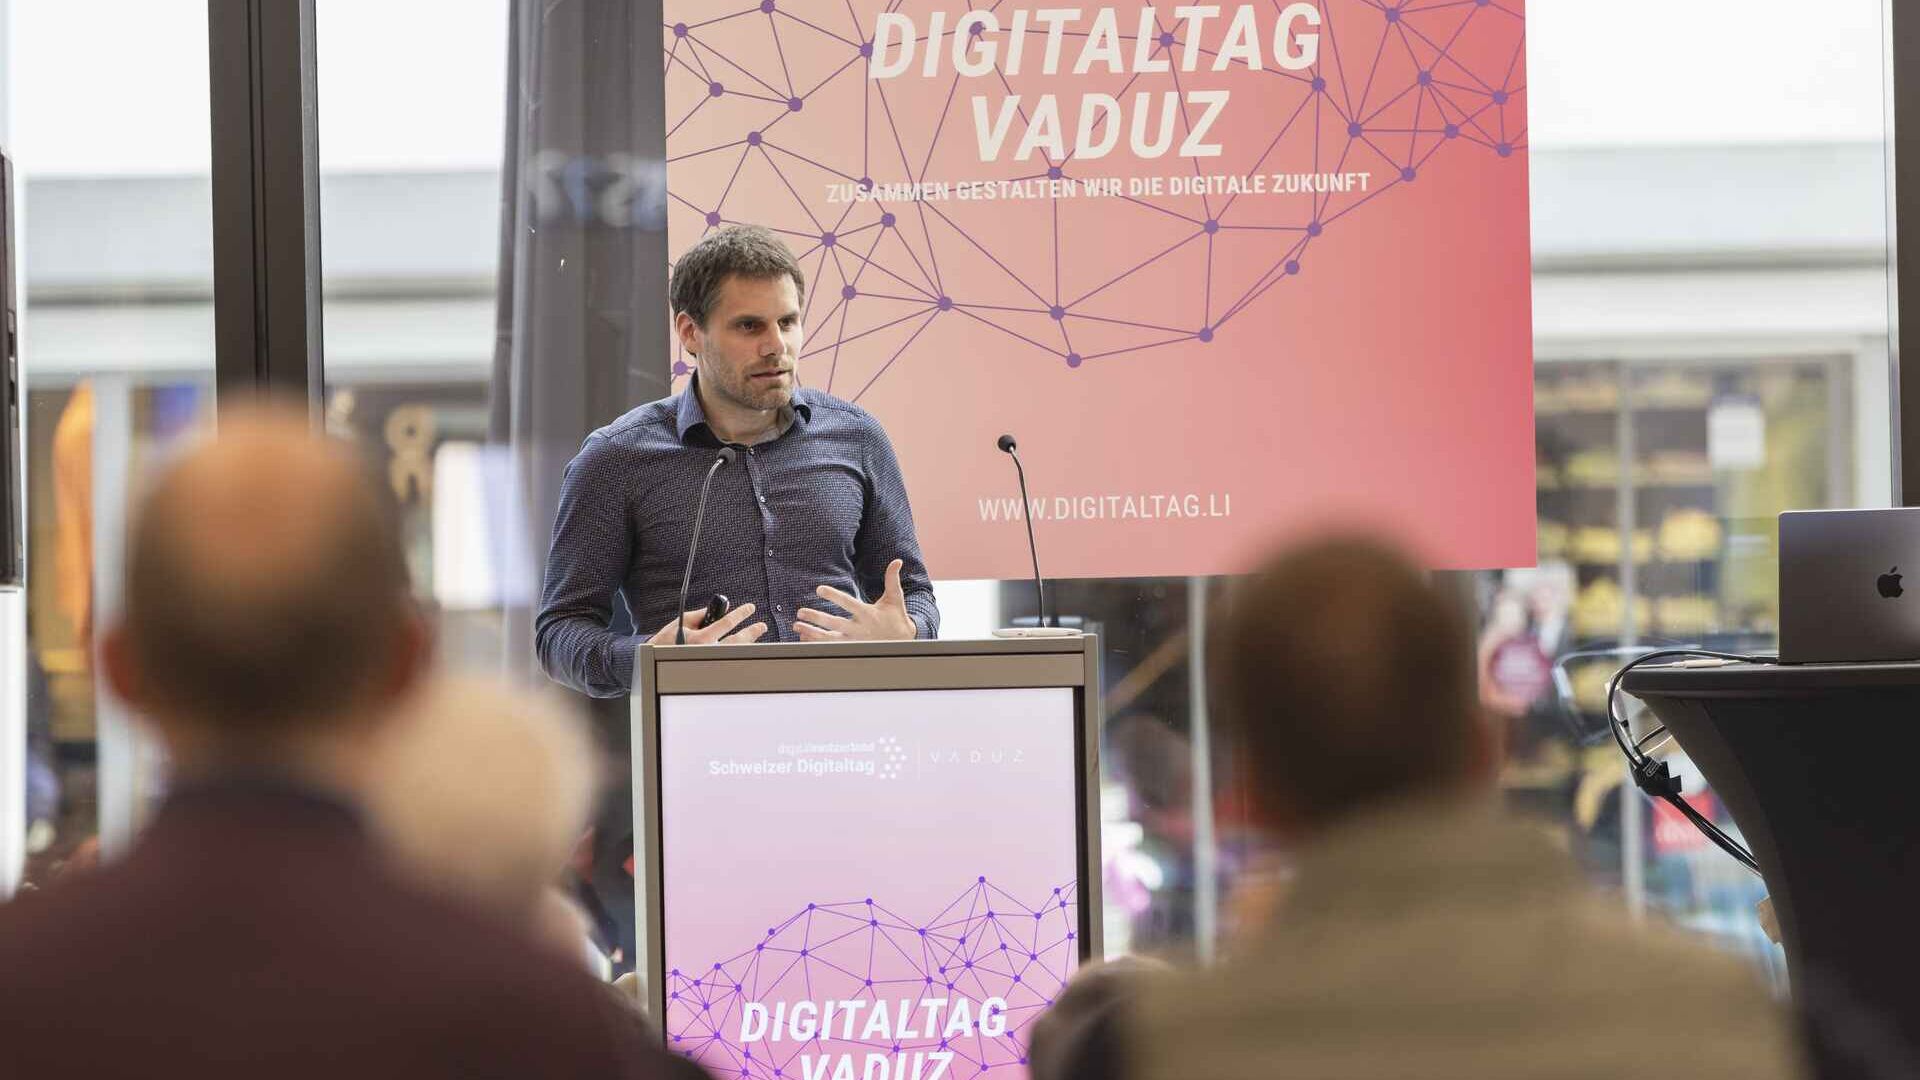 Το "Digitaltag Vaduz" υποδέχθηκε το Kunstmuseum της πρωτεύουσας του Πριγκιπάτου του Λιχτενστάιν το Σάββατο 15 Οκτωβρίου 2022